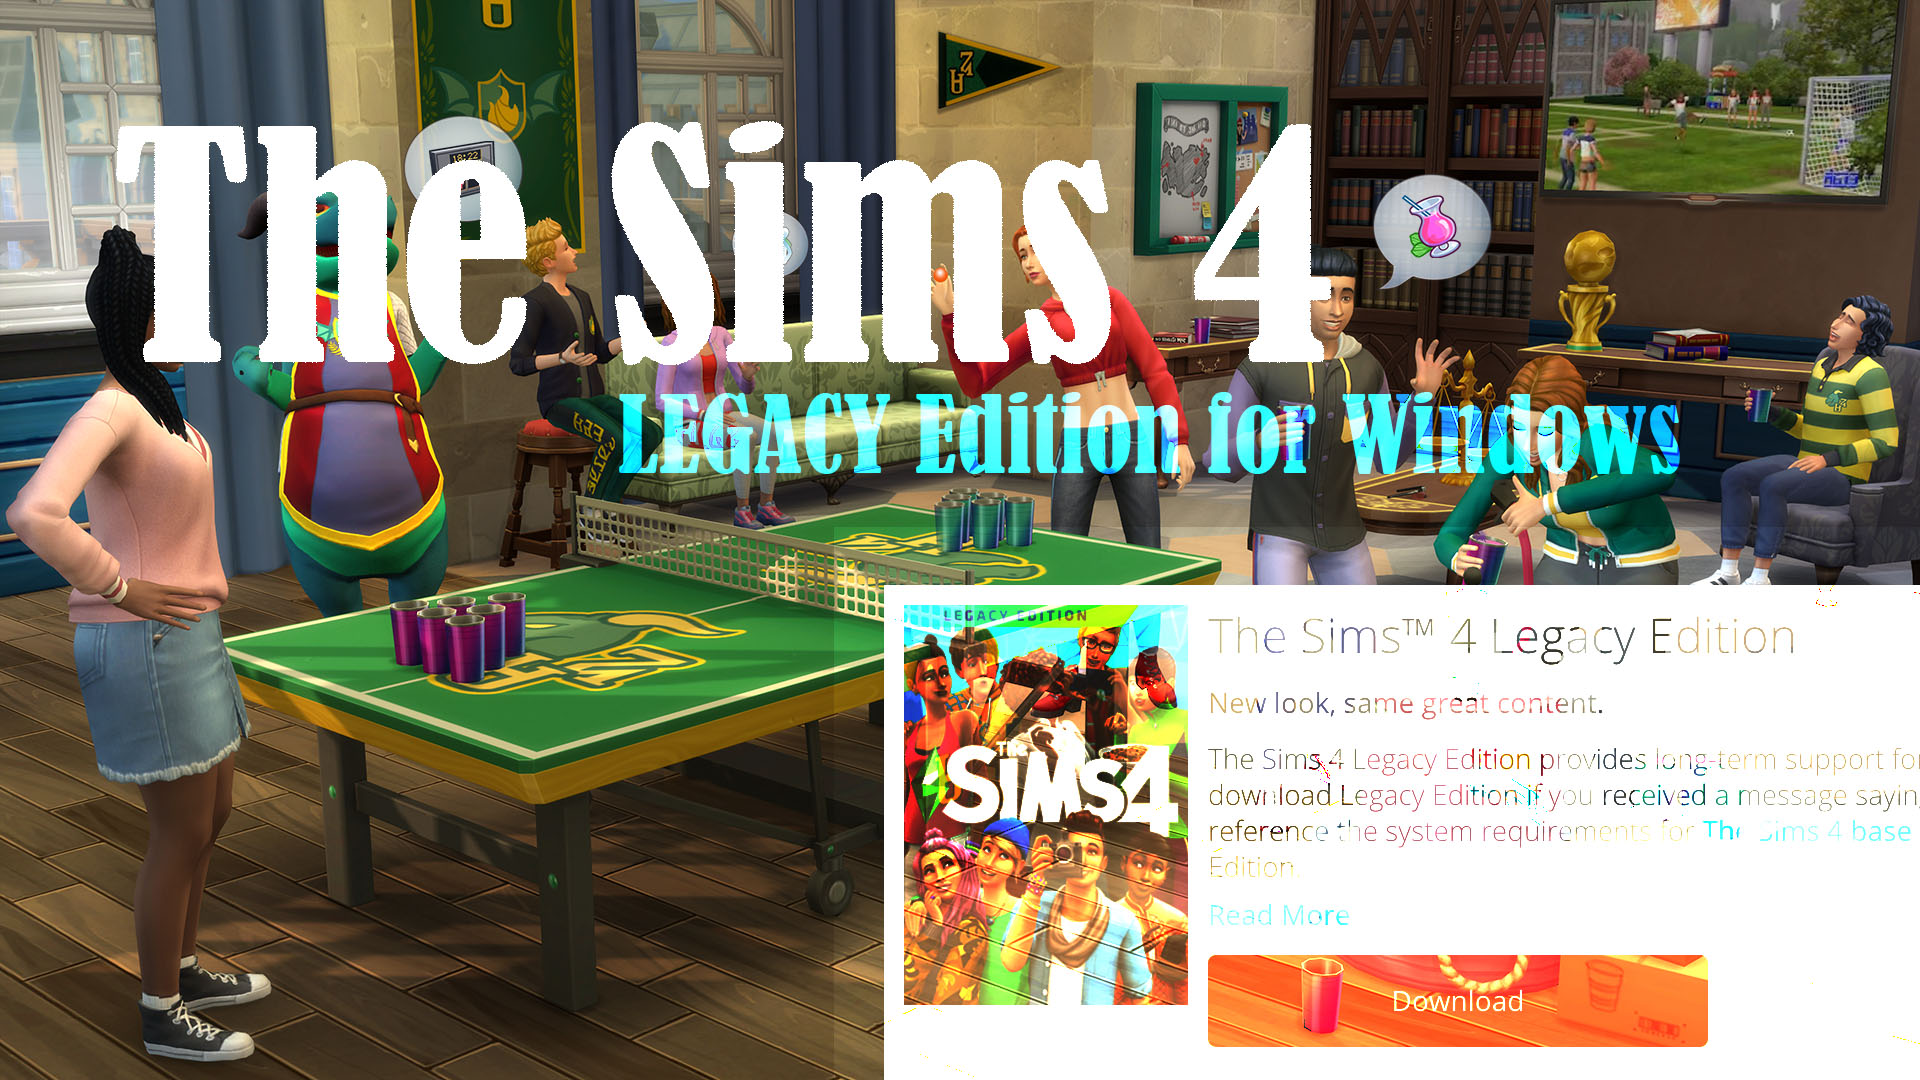 De Sims 4 Legacy Edition is nu beschikbaar op Origin - Town of Plumbobs